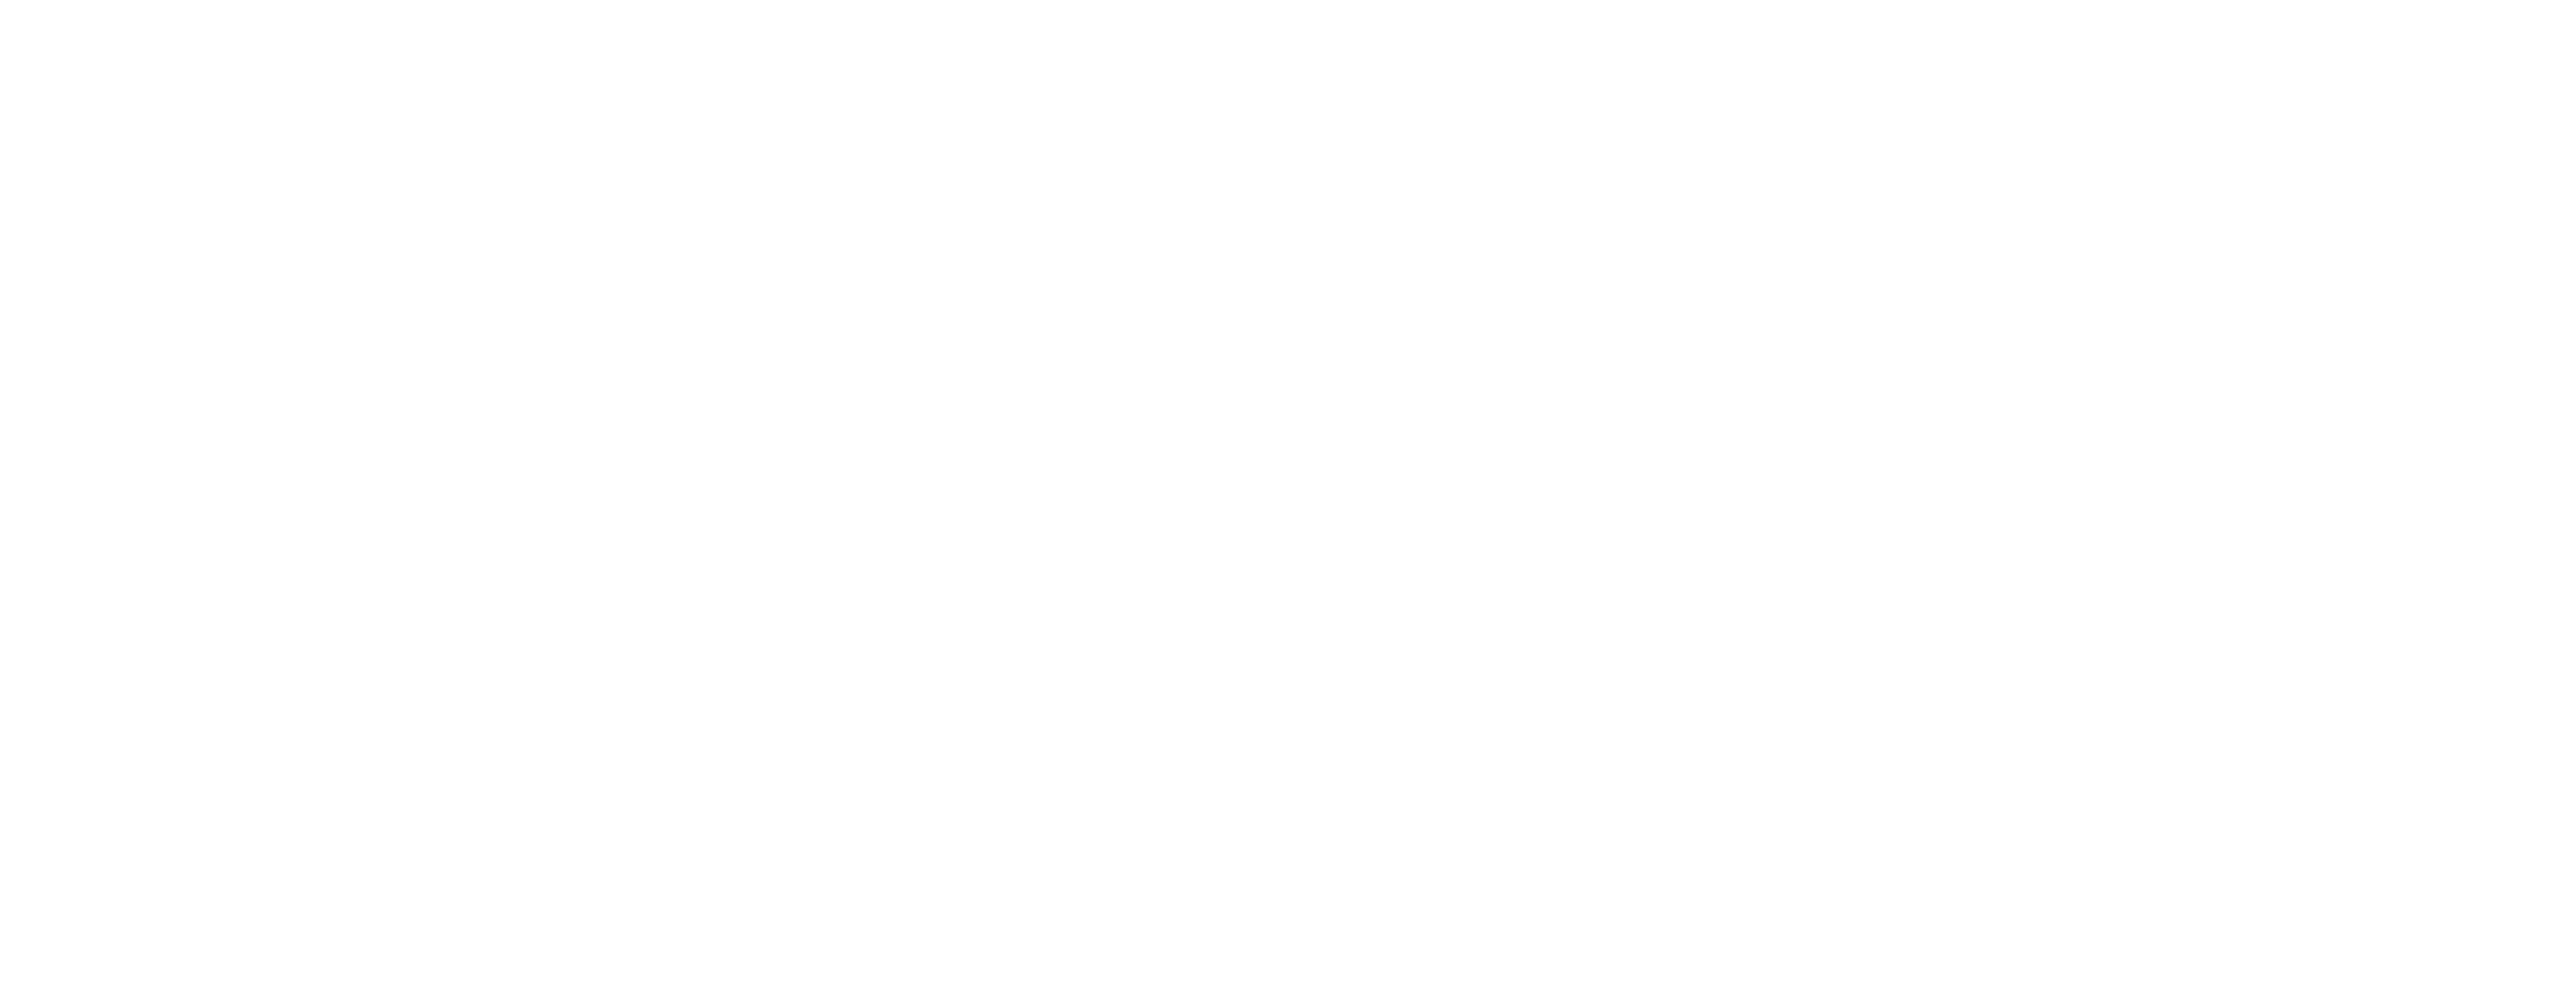 Royal Horticultural Society (RHS)